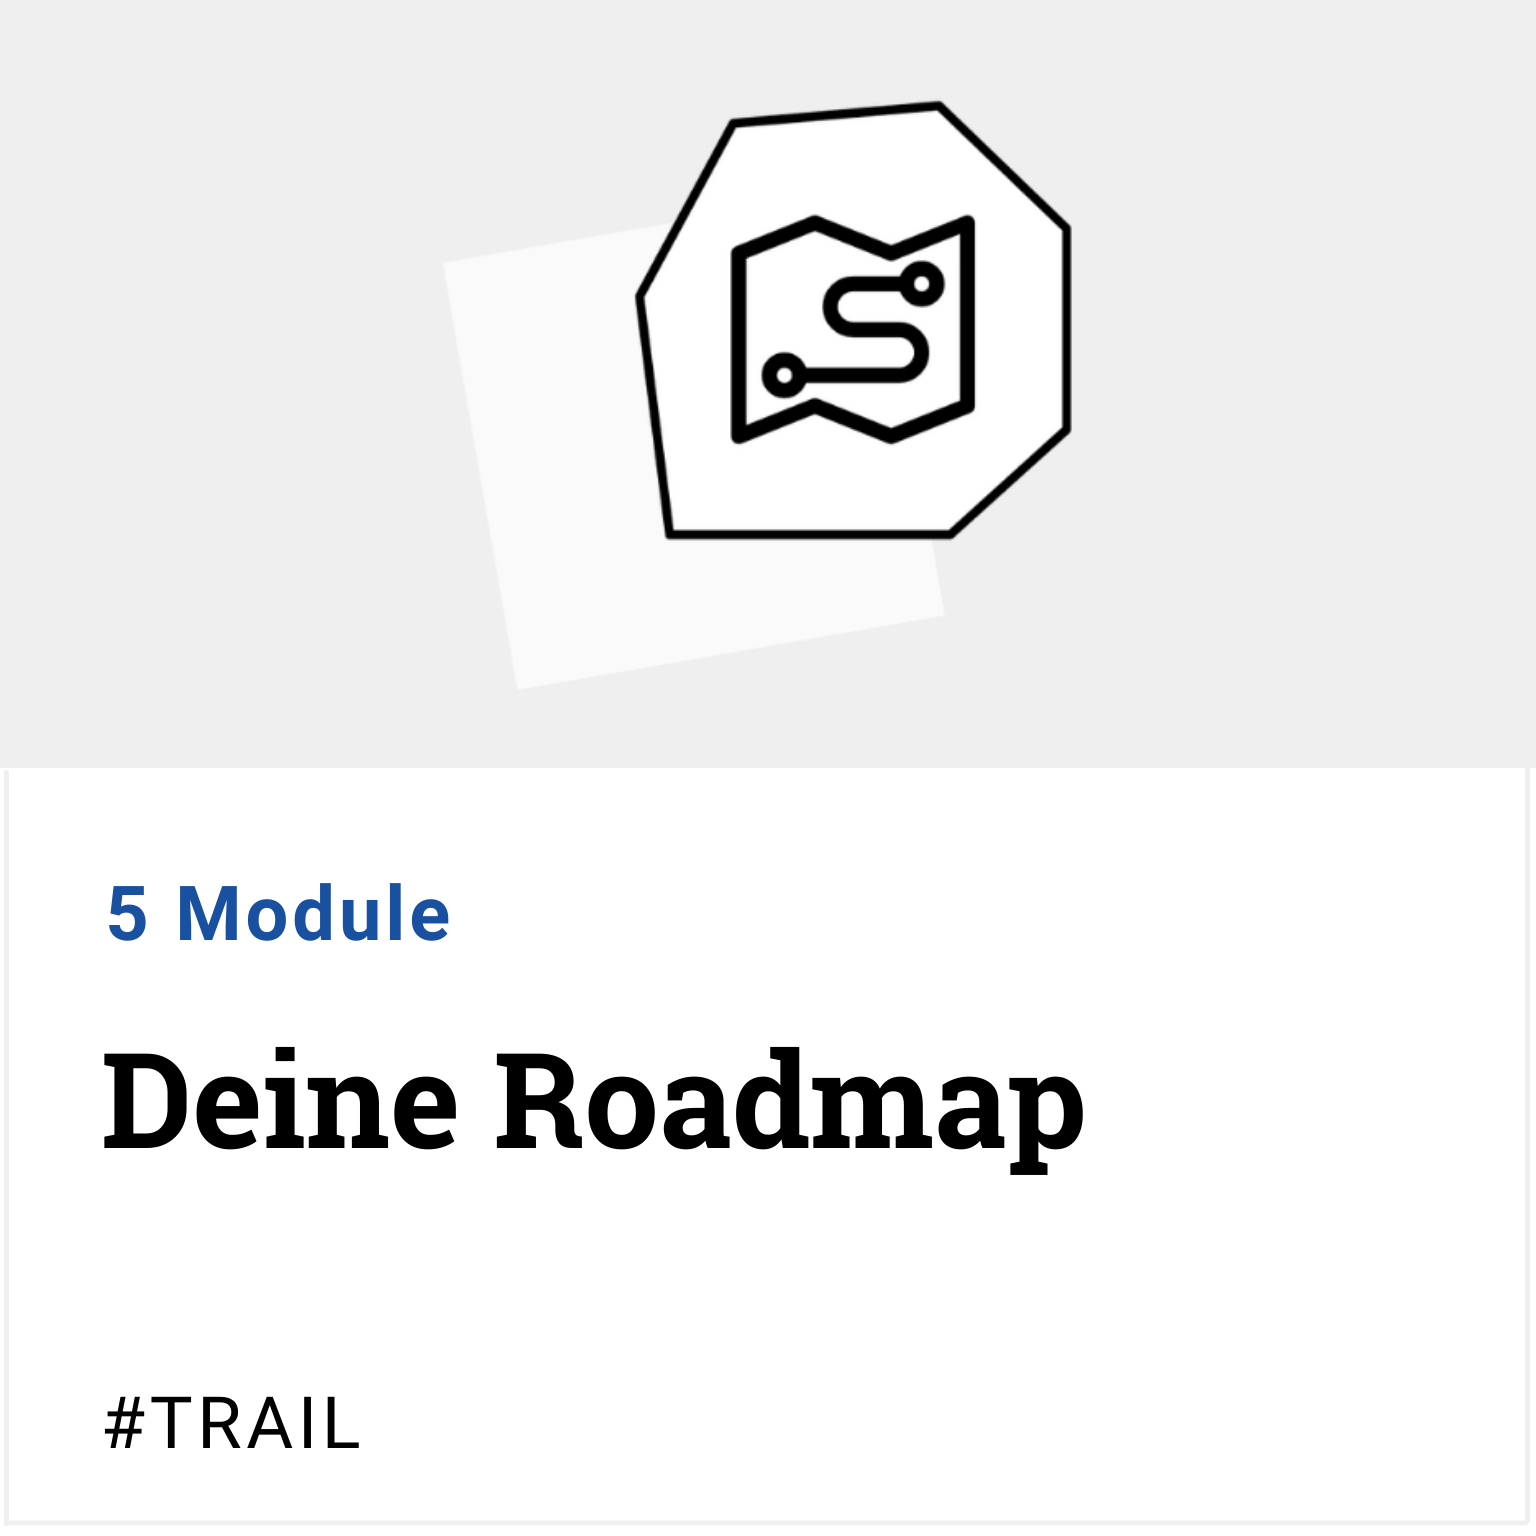 #Trail Deine Roadmap 5 Module